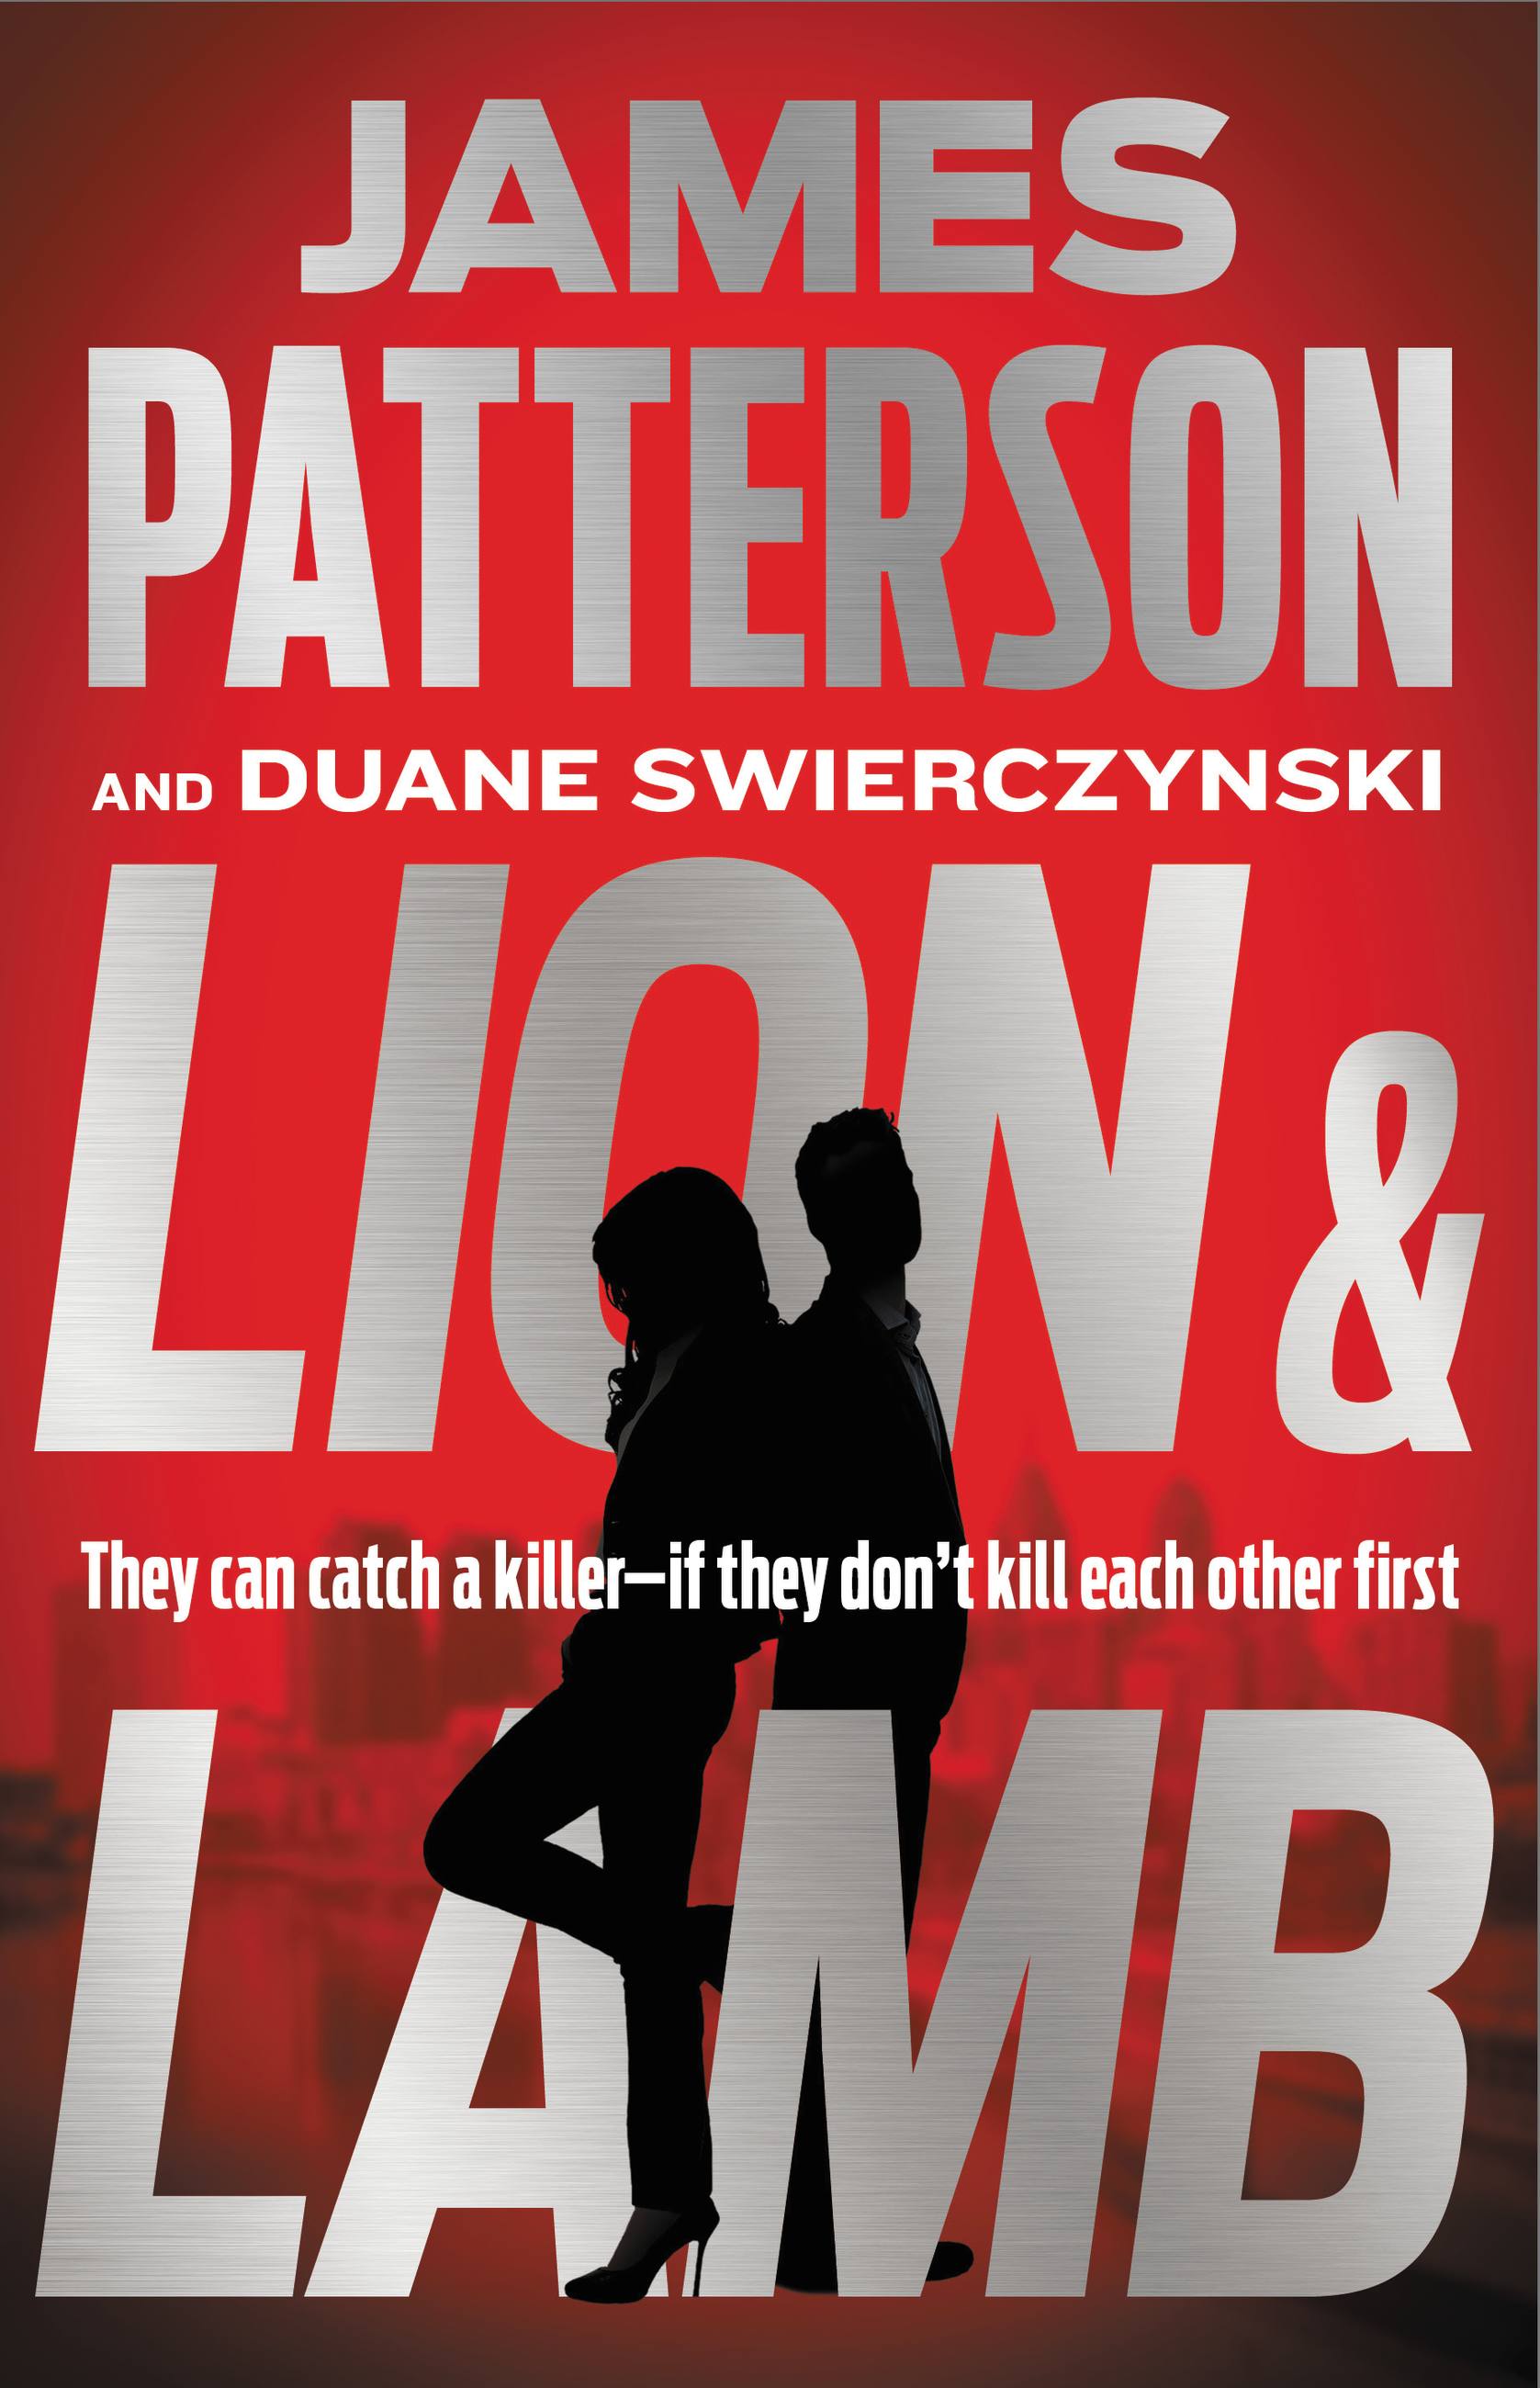 Lion & Lamb by James Patterson and Duane Swierczynski